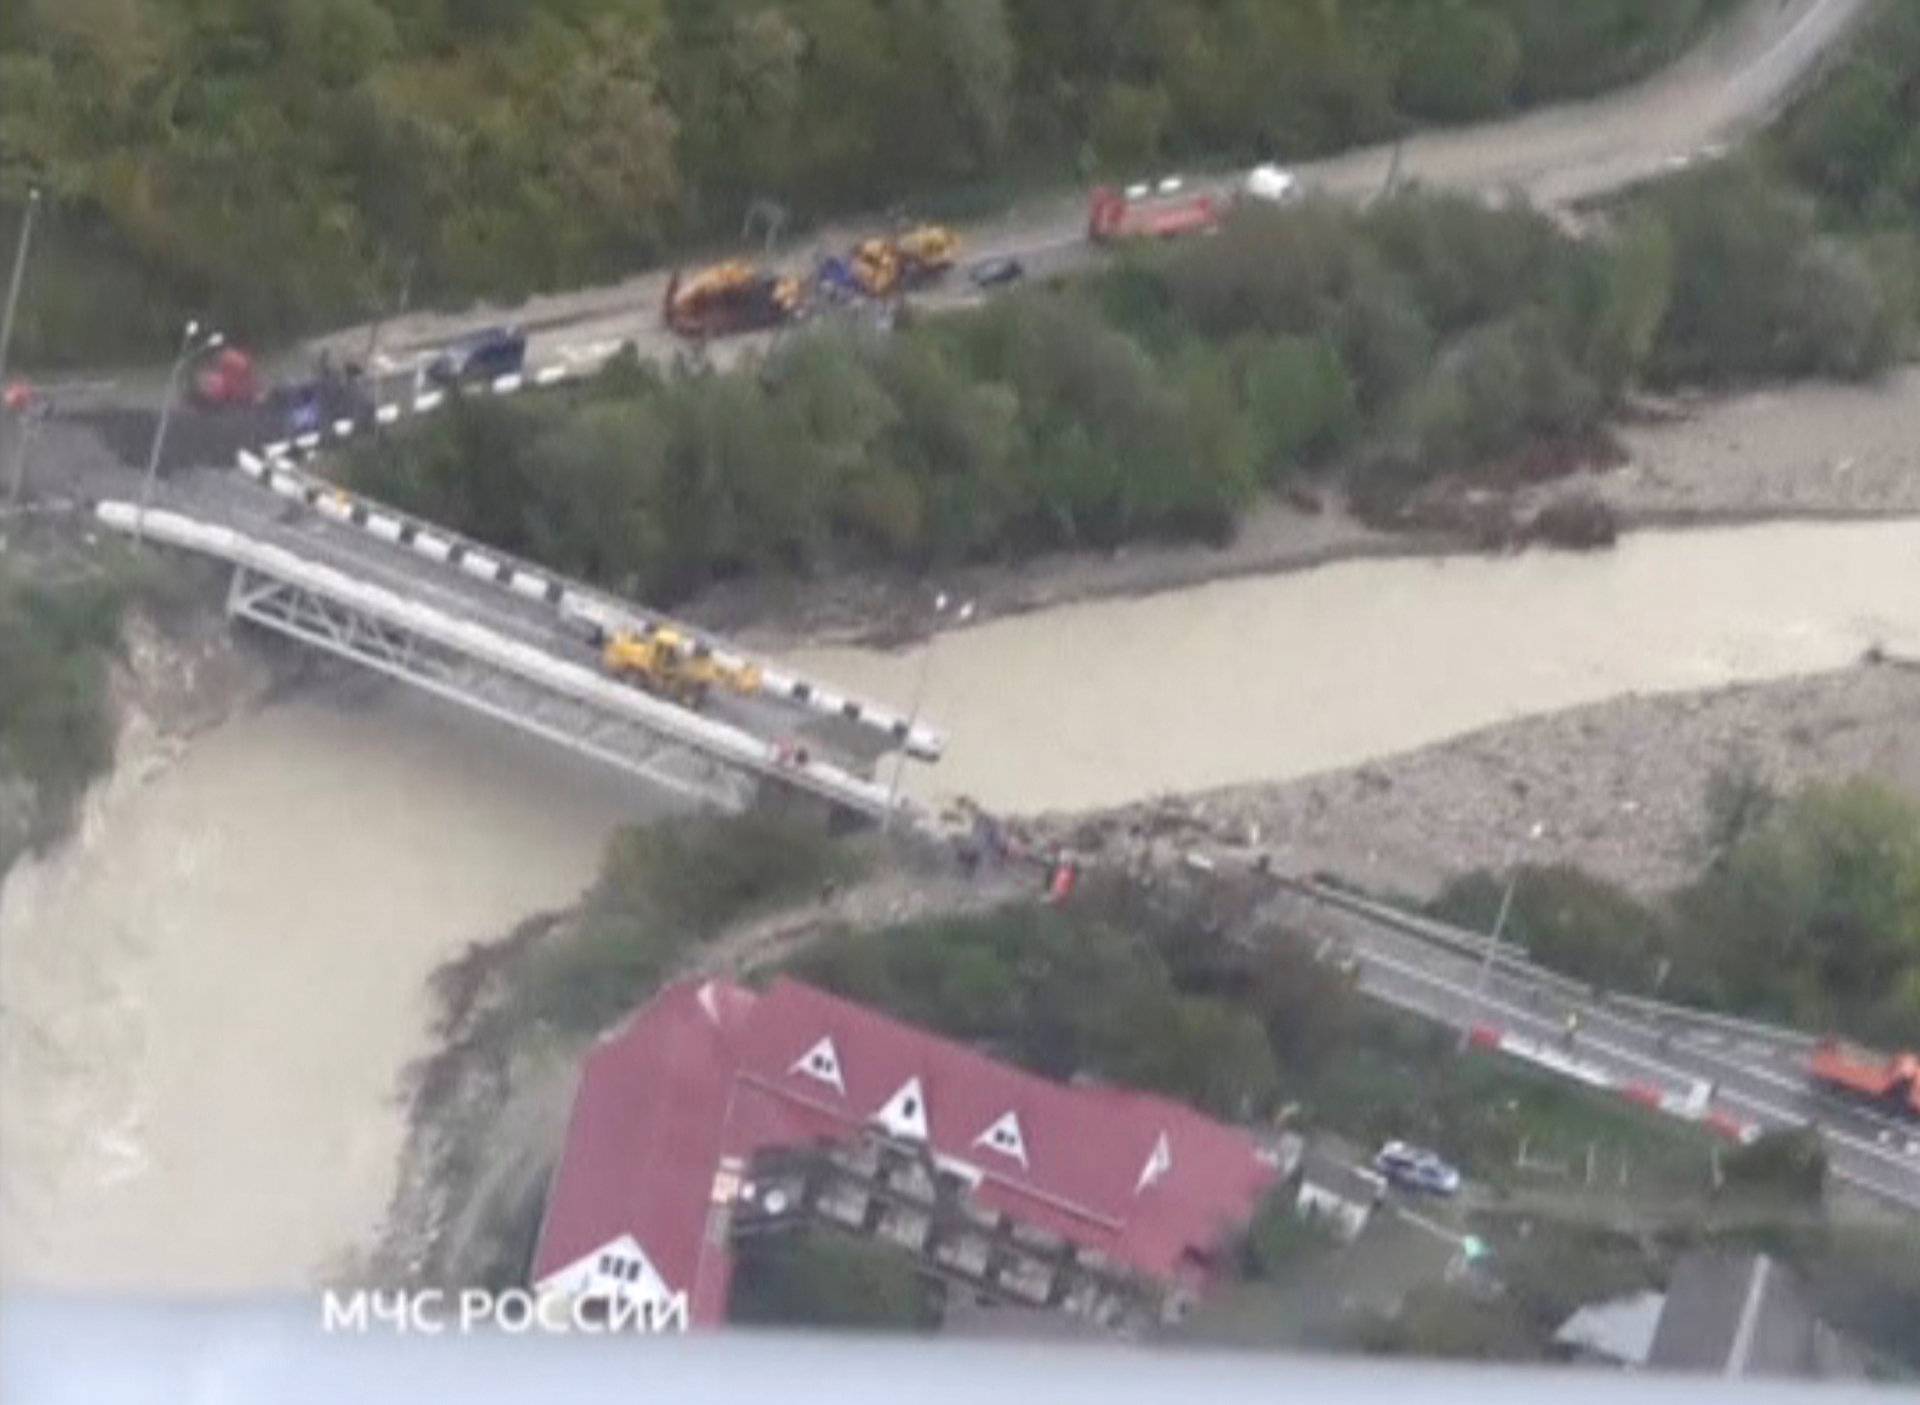 A still image shows a bridge damaged by floodwaters in a settlement in Krasnodar Region